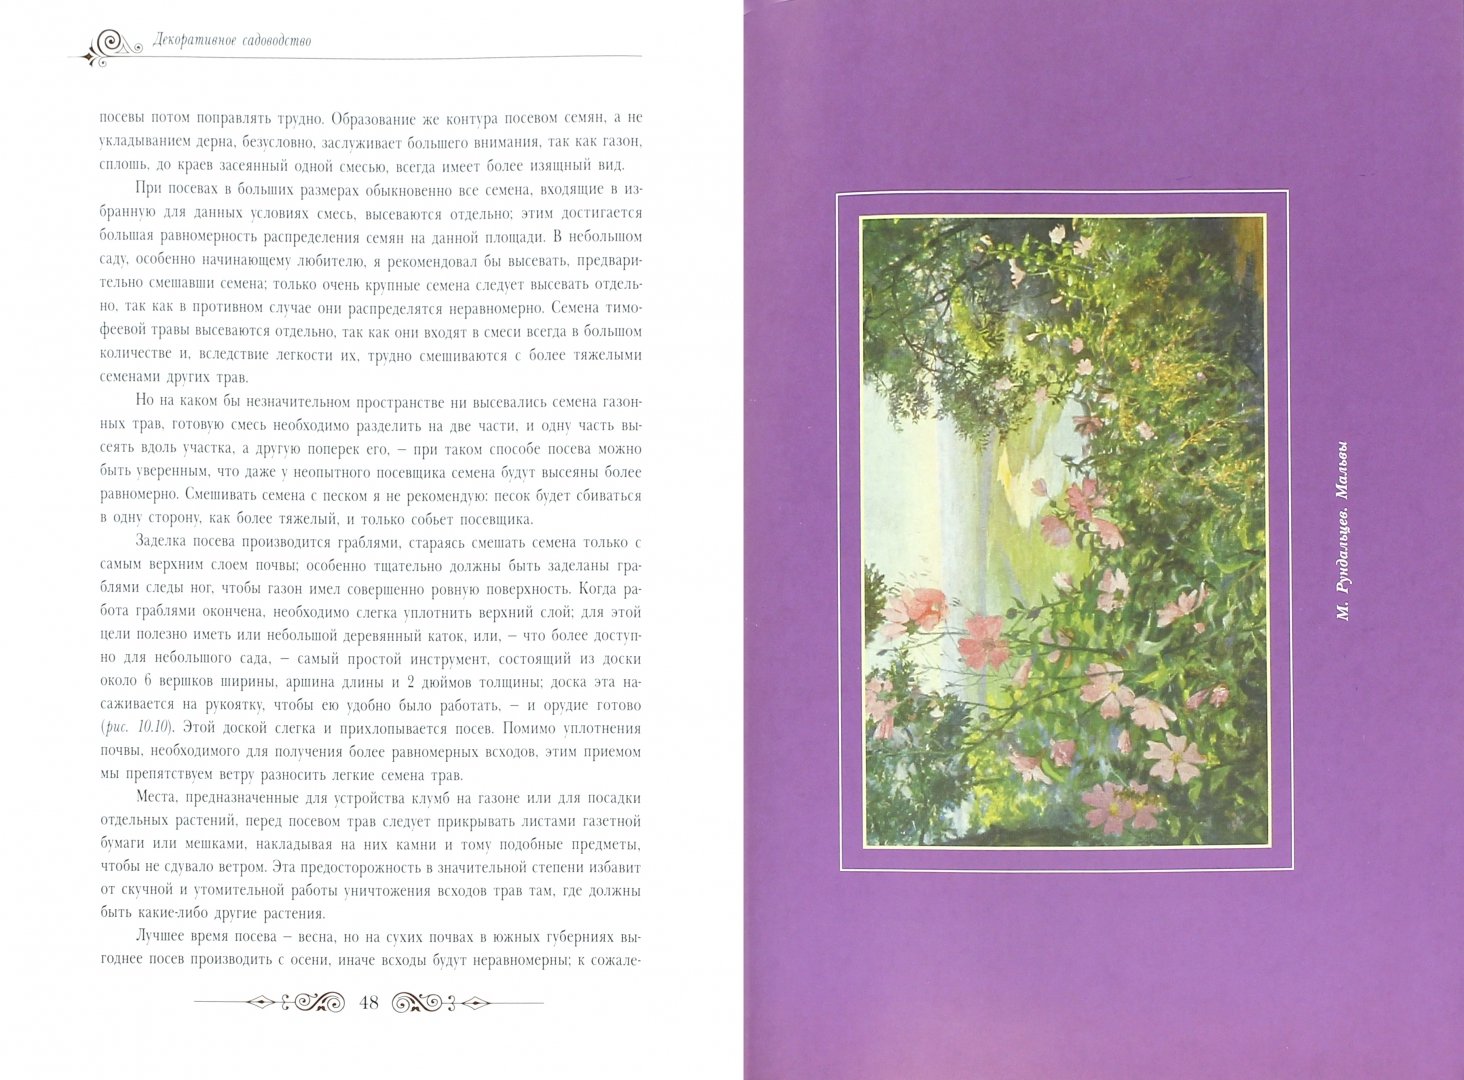 Иллюстрация 1 из 6 для Декоративное садоводство - Павел Штейнберг | Лабиринт - книги. Источник: Лабиринт